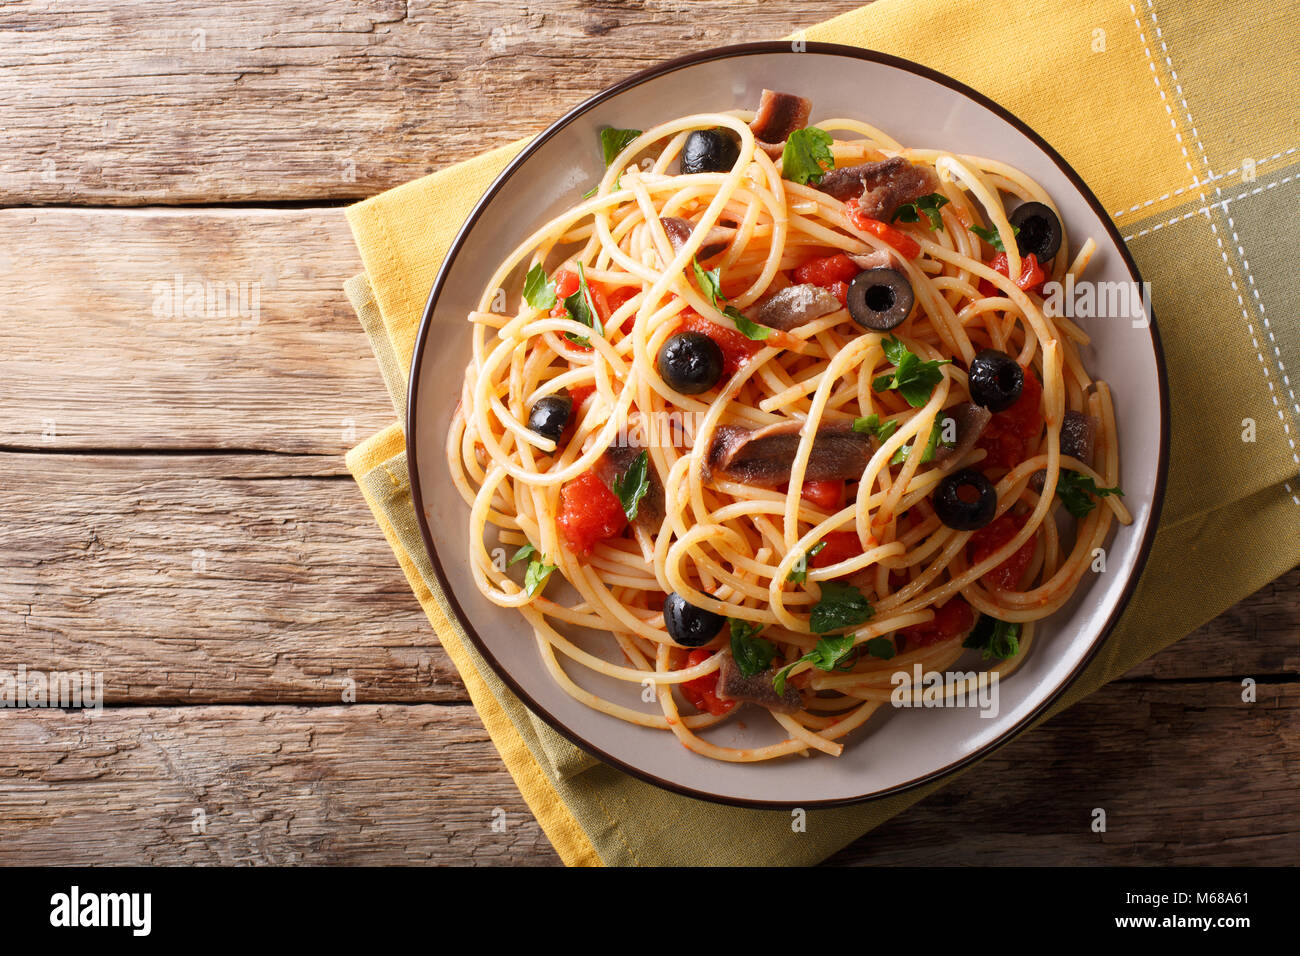 Traditionelle Pasta alla puttanesca mit Sardellen, Tomaten, Knoblauch und schwarzen Oliven close-up auf einem Teller auf den Tisch. horizontal oben Ansicht von oben Stockfoto